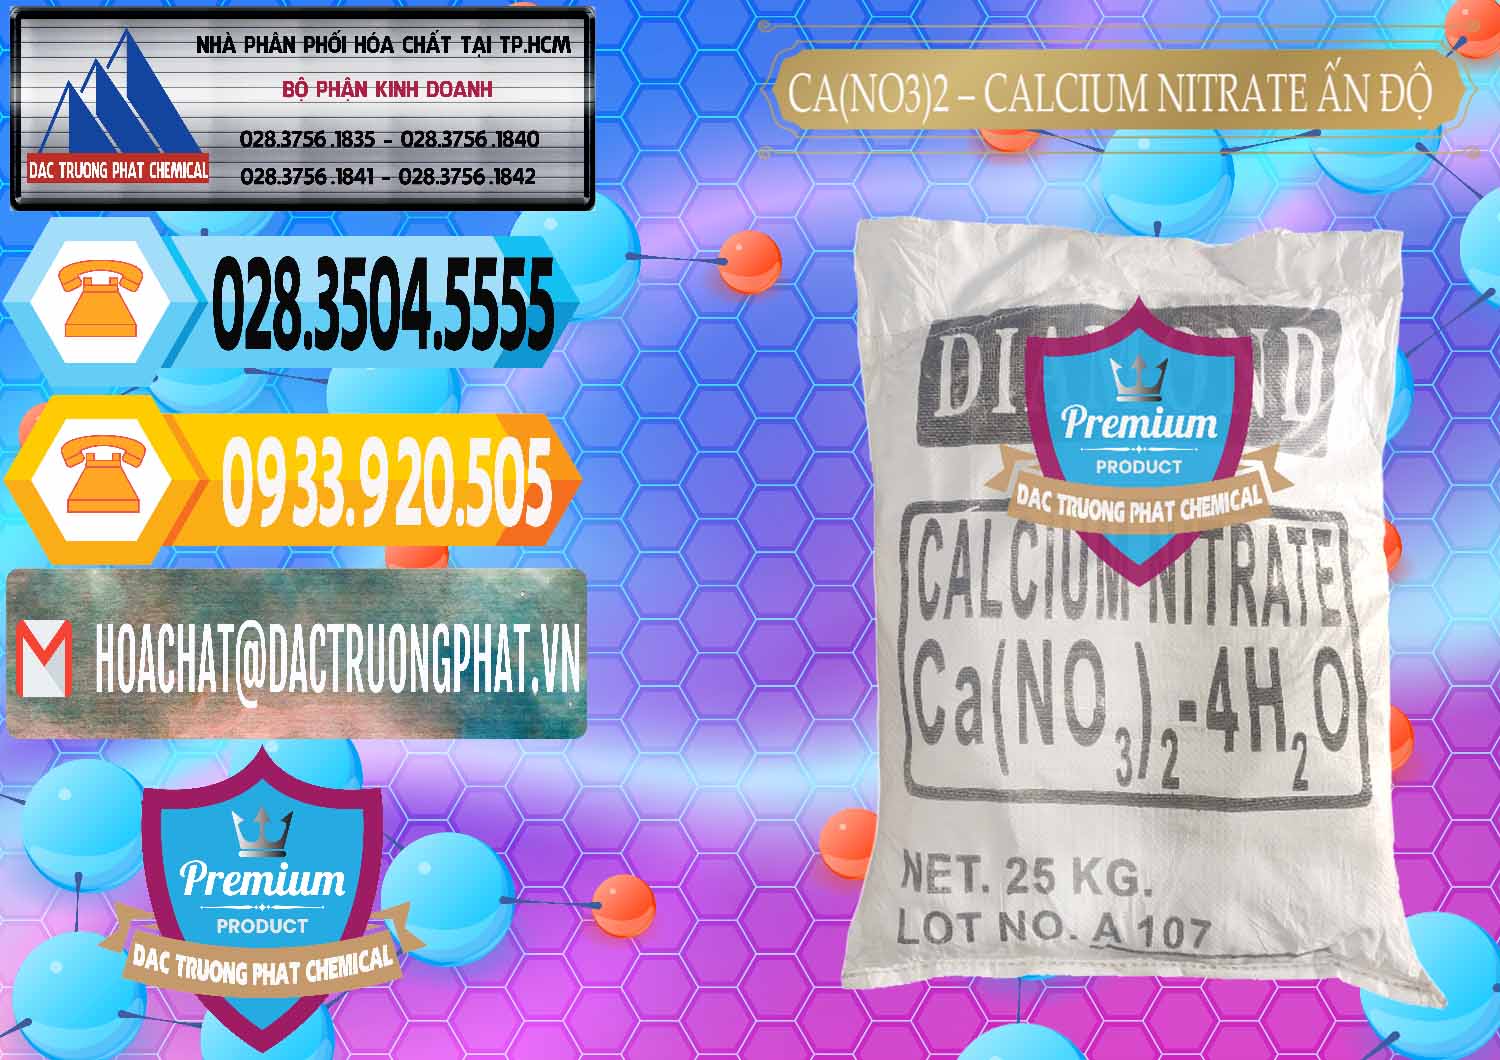 Nơi bán và cung cấp CA(NO3)2 – Calcium Nitrate Ấn Độ India - 0038 - Đơn vị chuyên nhập khẩu - cung cấp hóa chất tại TP.HCM - hoachattayrua.net